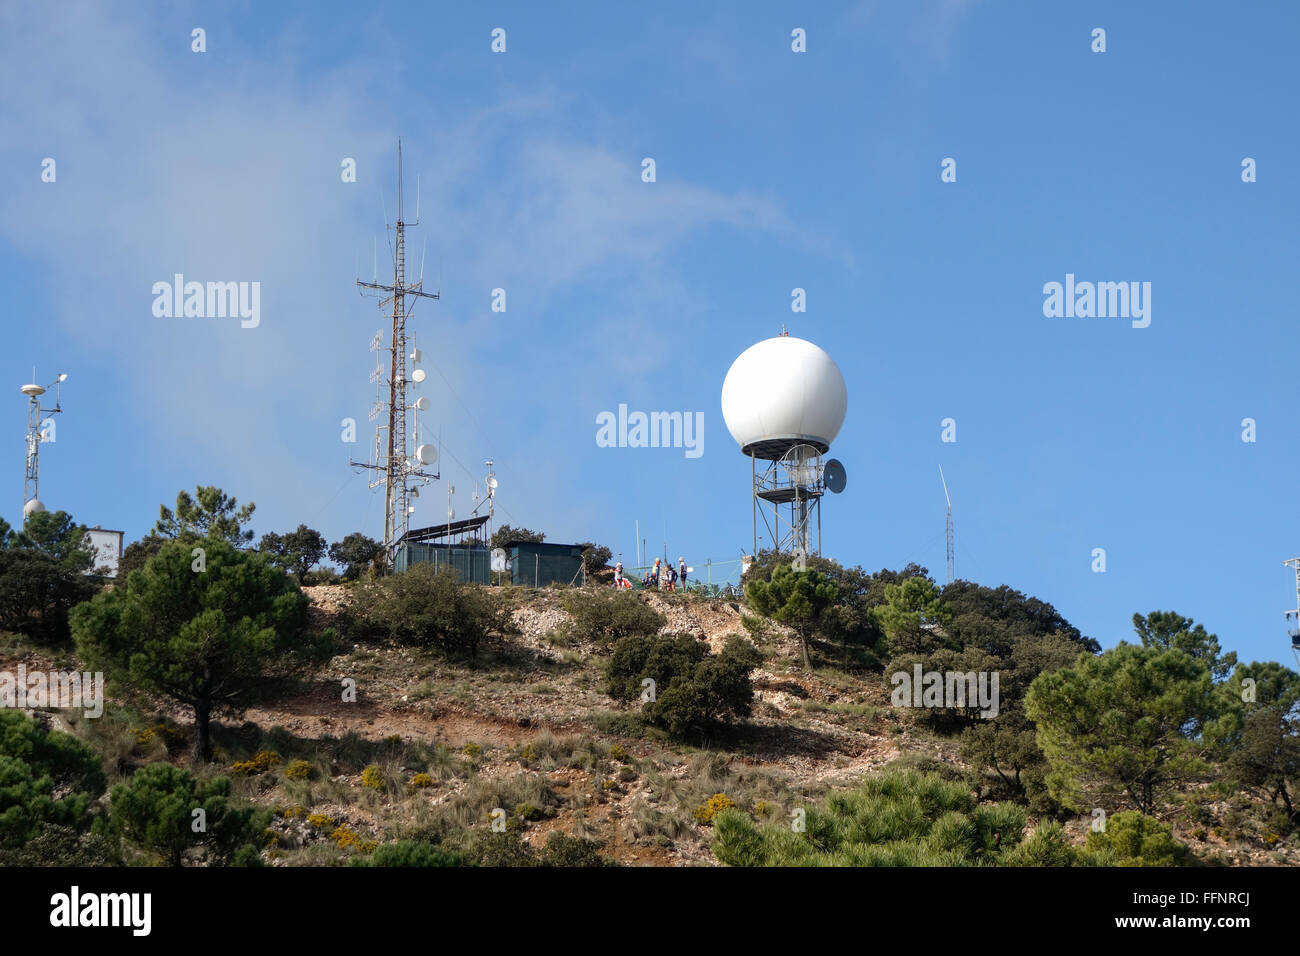 Wetter-Radar, Wetter-Überwachungsradar, Doppler Radar, neben Antennen, Antennen auf Mijas Berg, Andalusien, Spanien. Stockfoto